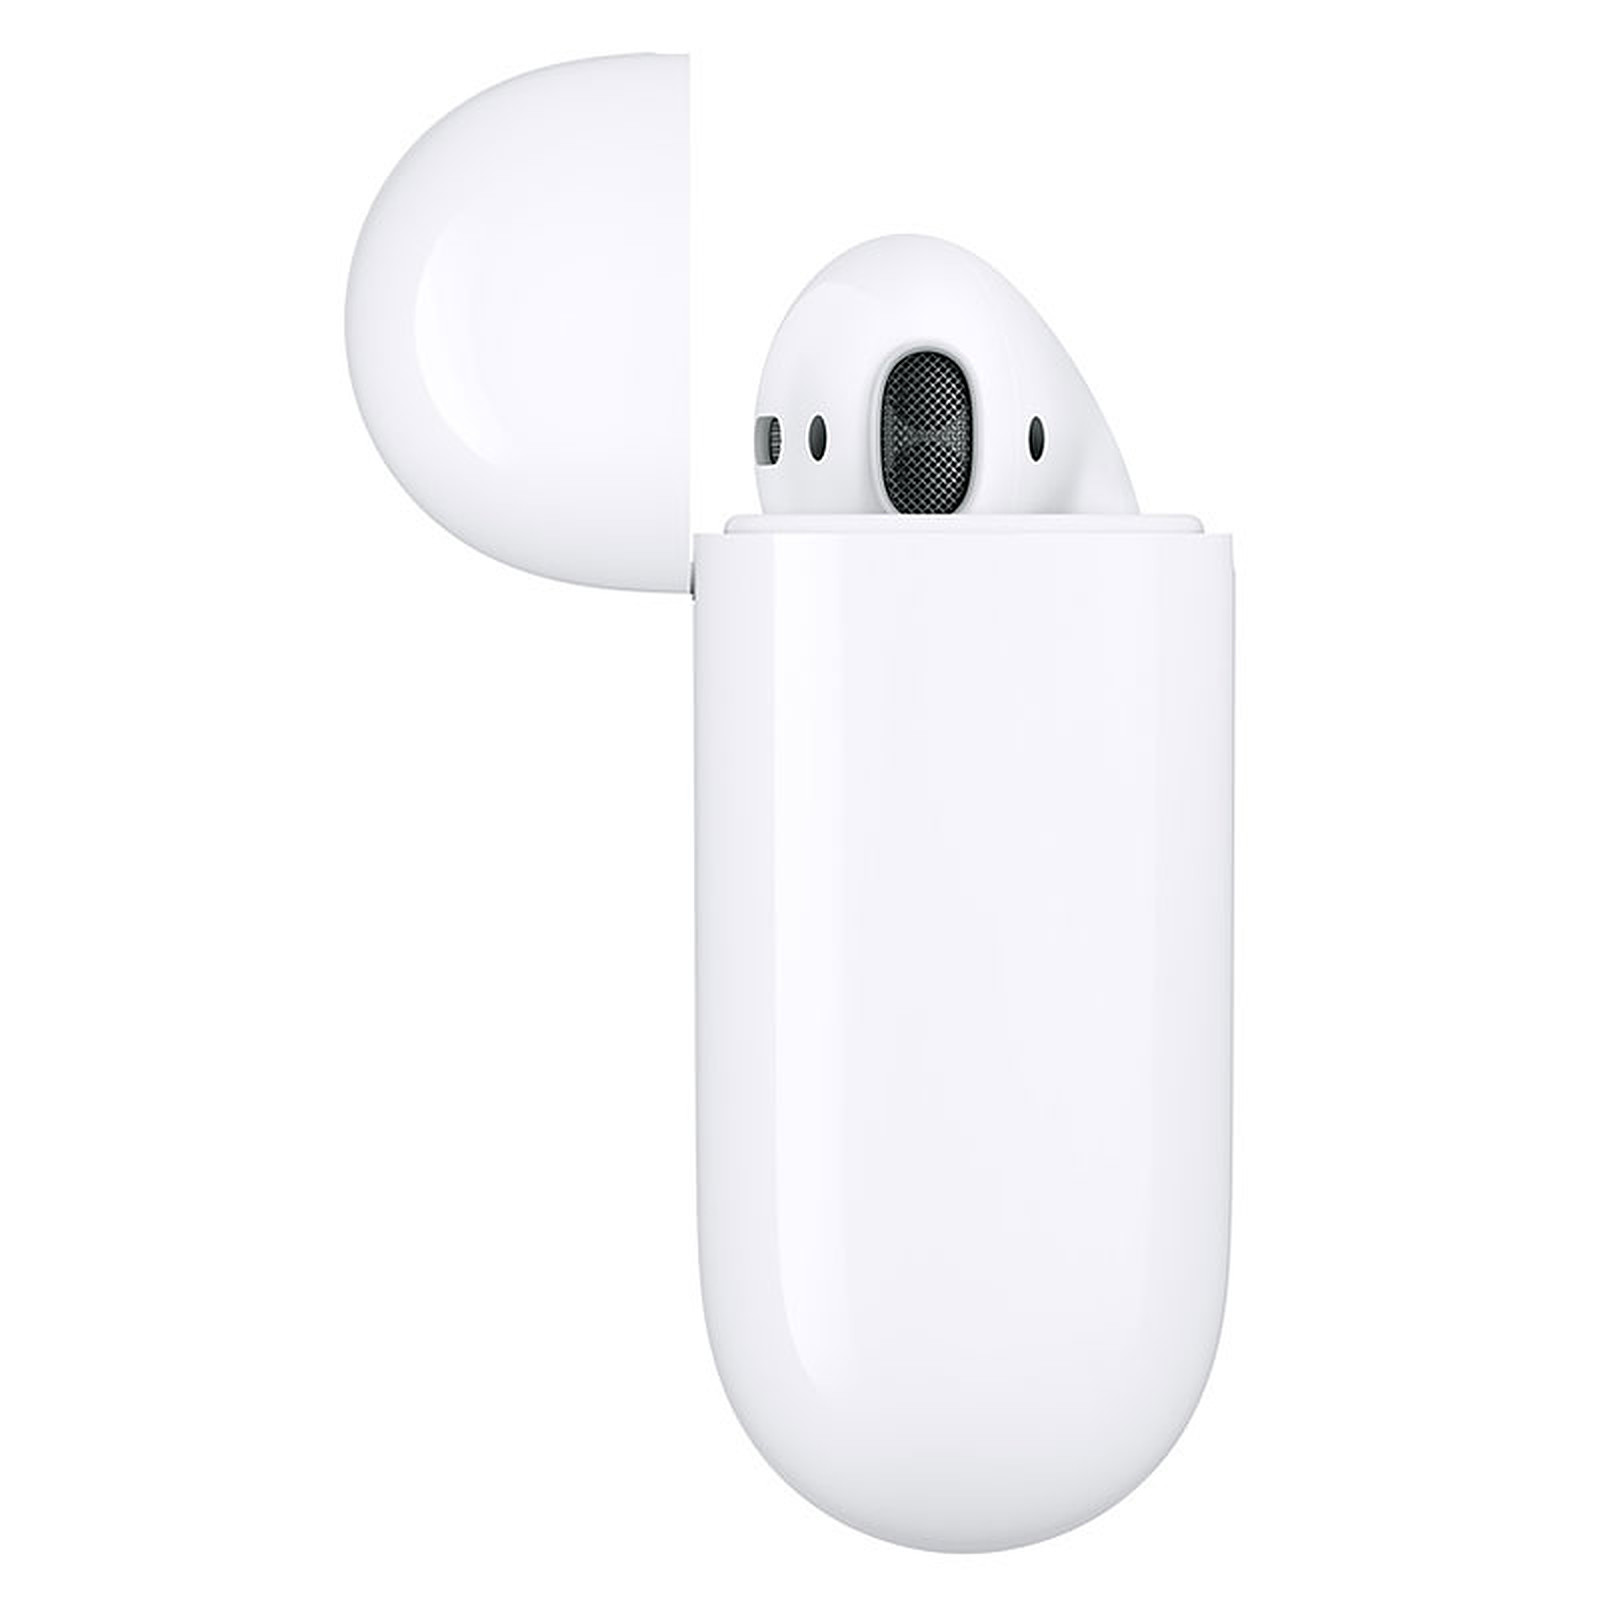 Ecouteur Airpods 2 - MV7N2ZM/A - Accessoire téléphonie Apple - 2